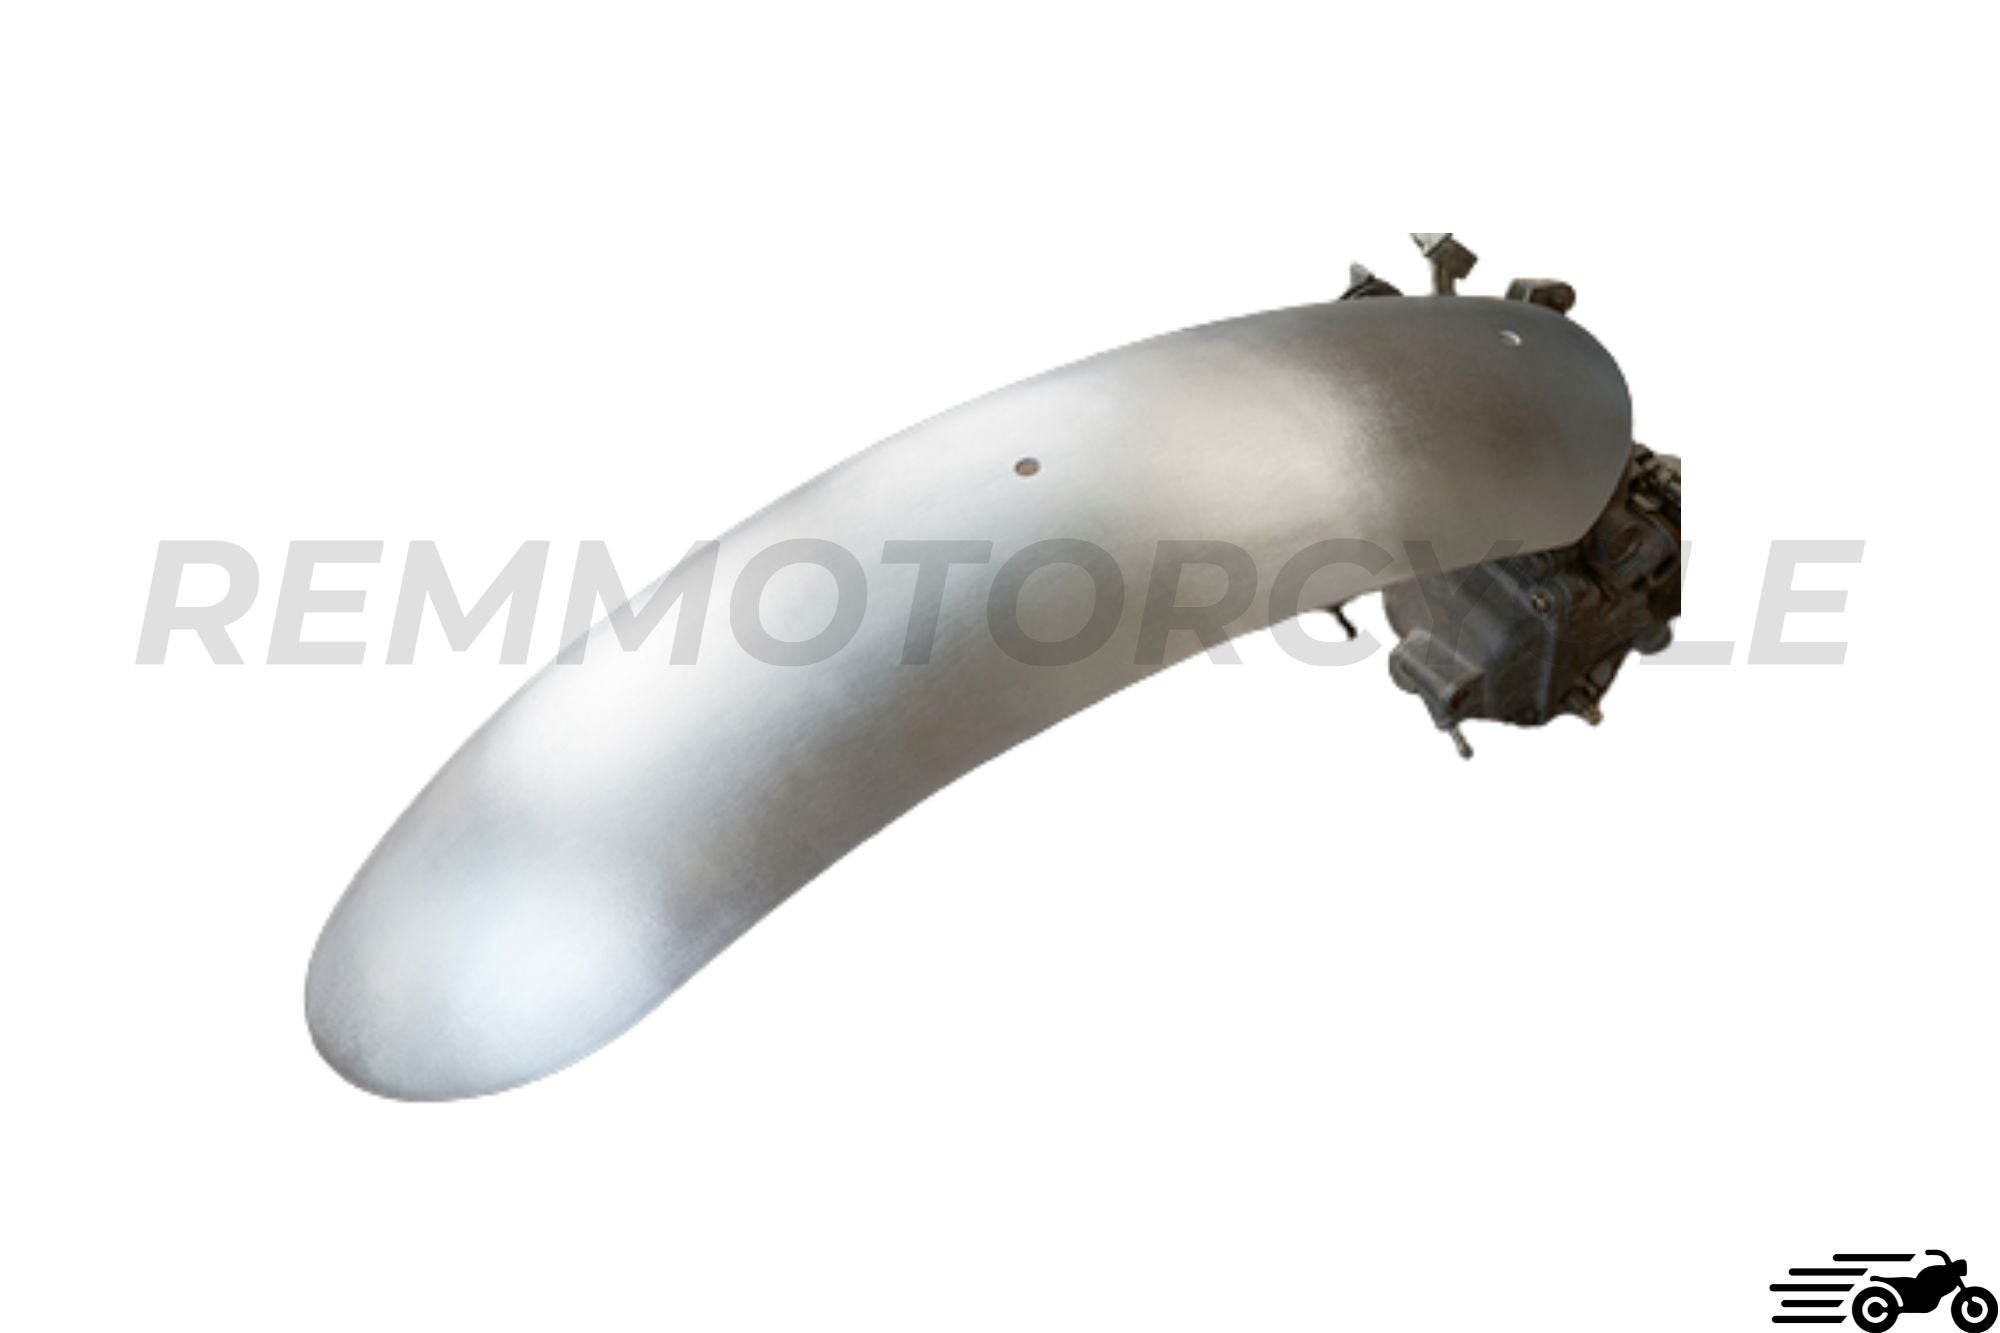 Scrambler de barro de aluminio de motocicleta con soporte